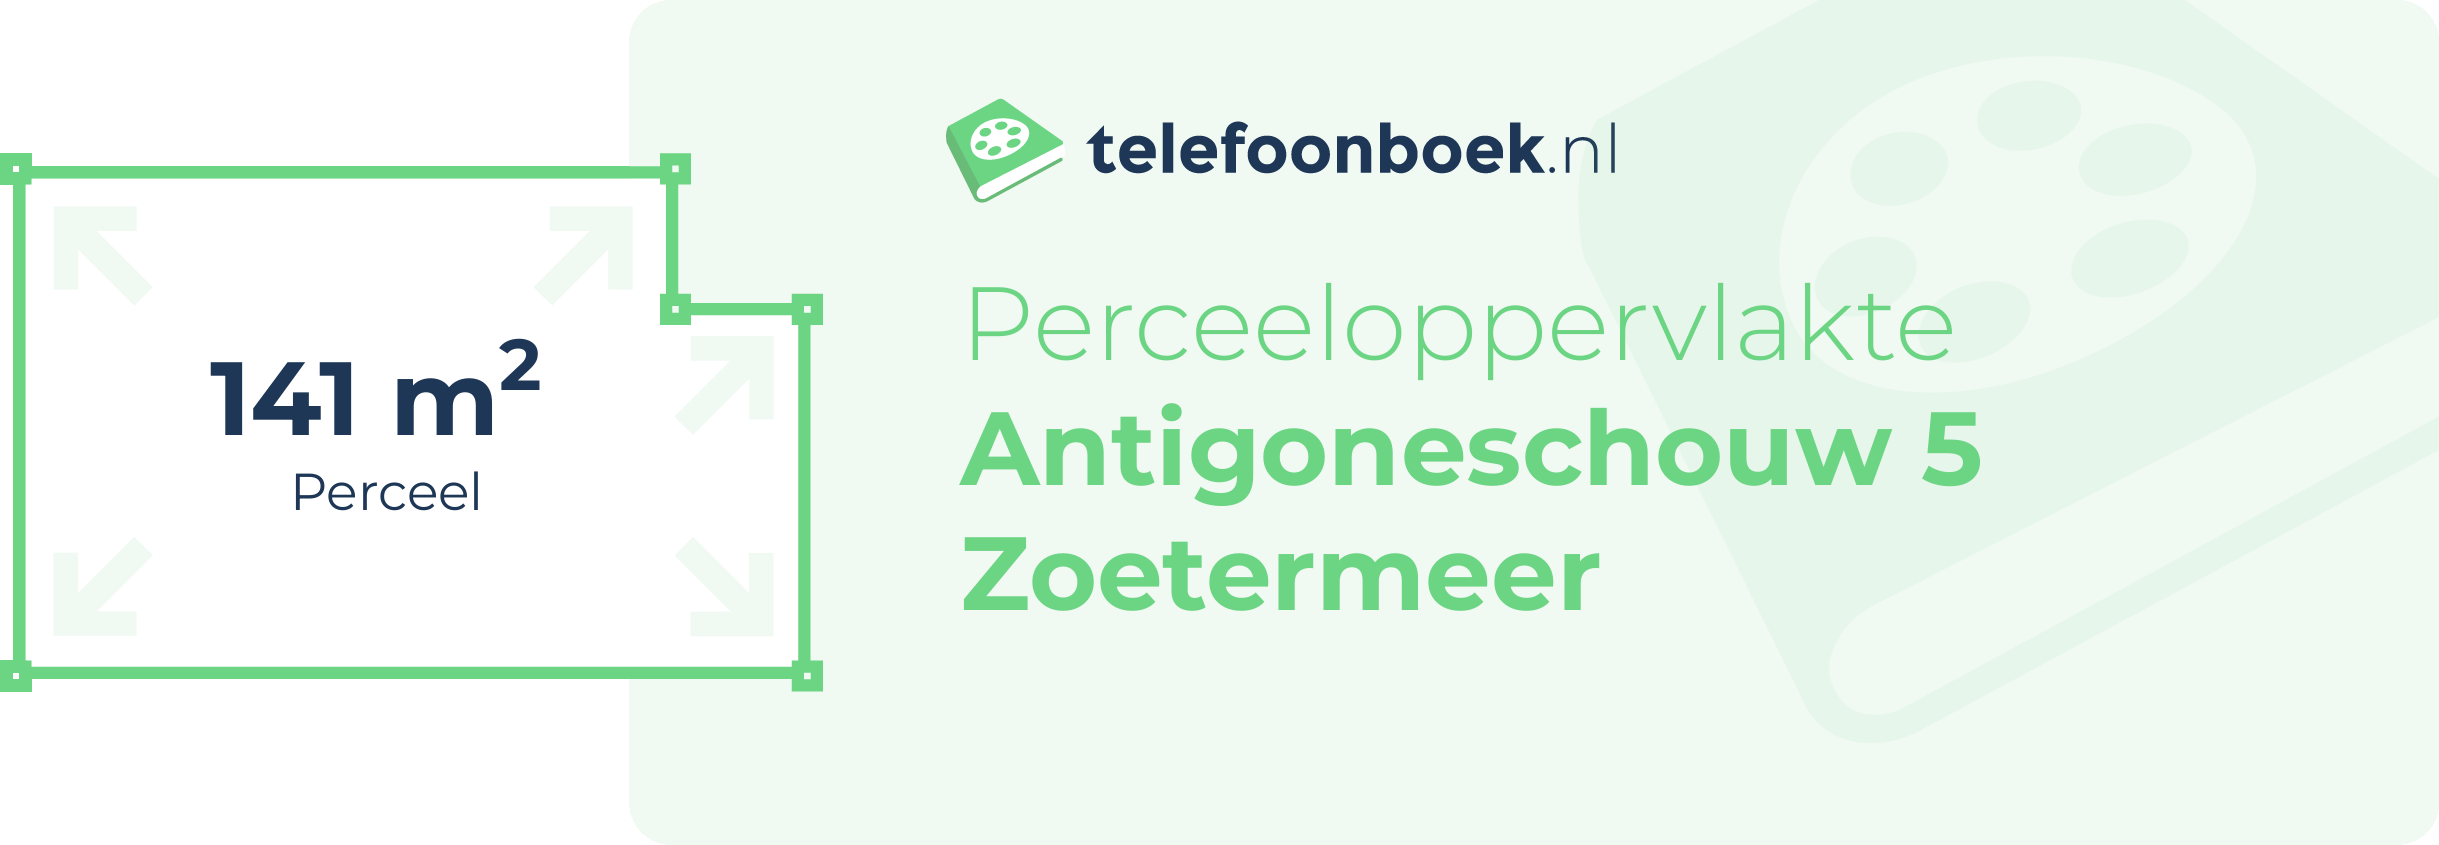 Perceeloppervlakte Antigoneschouw 5 Zoetermeer